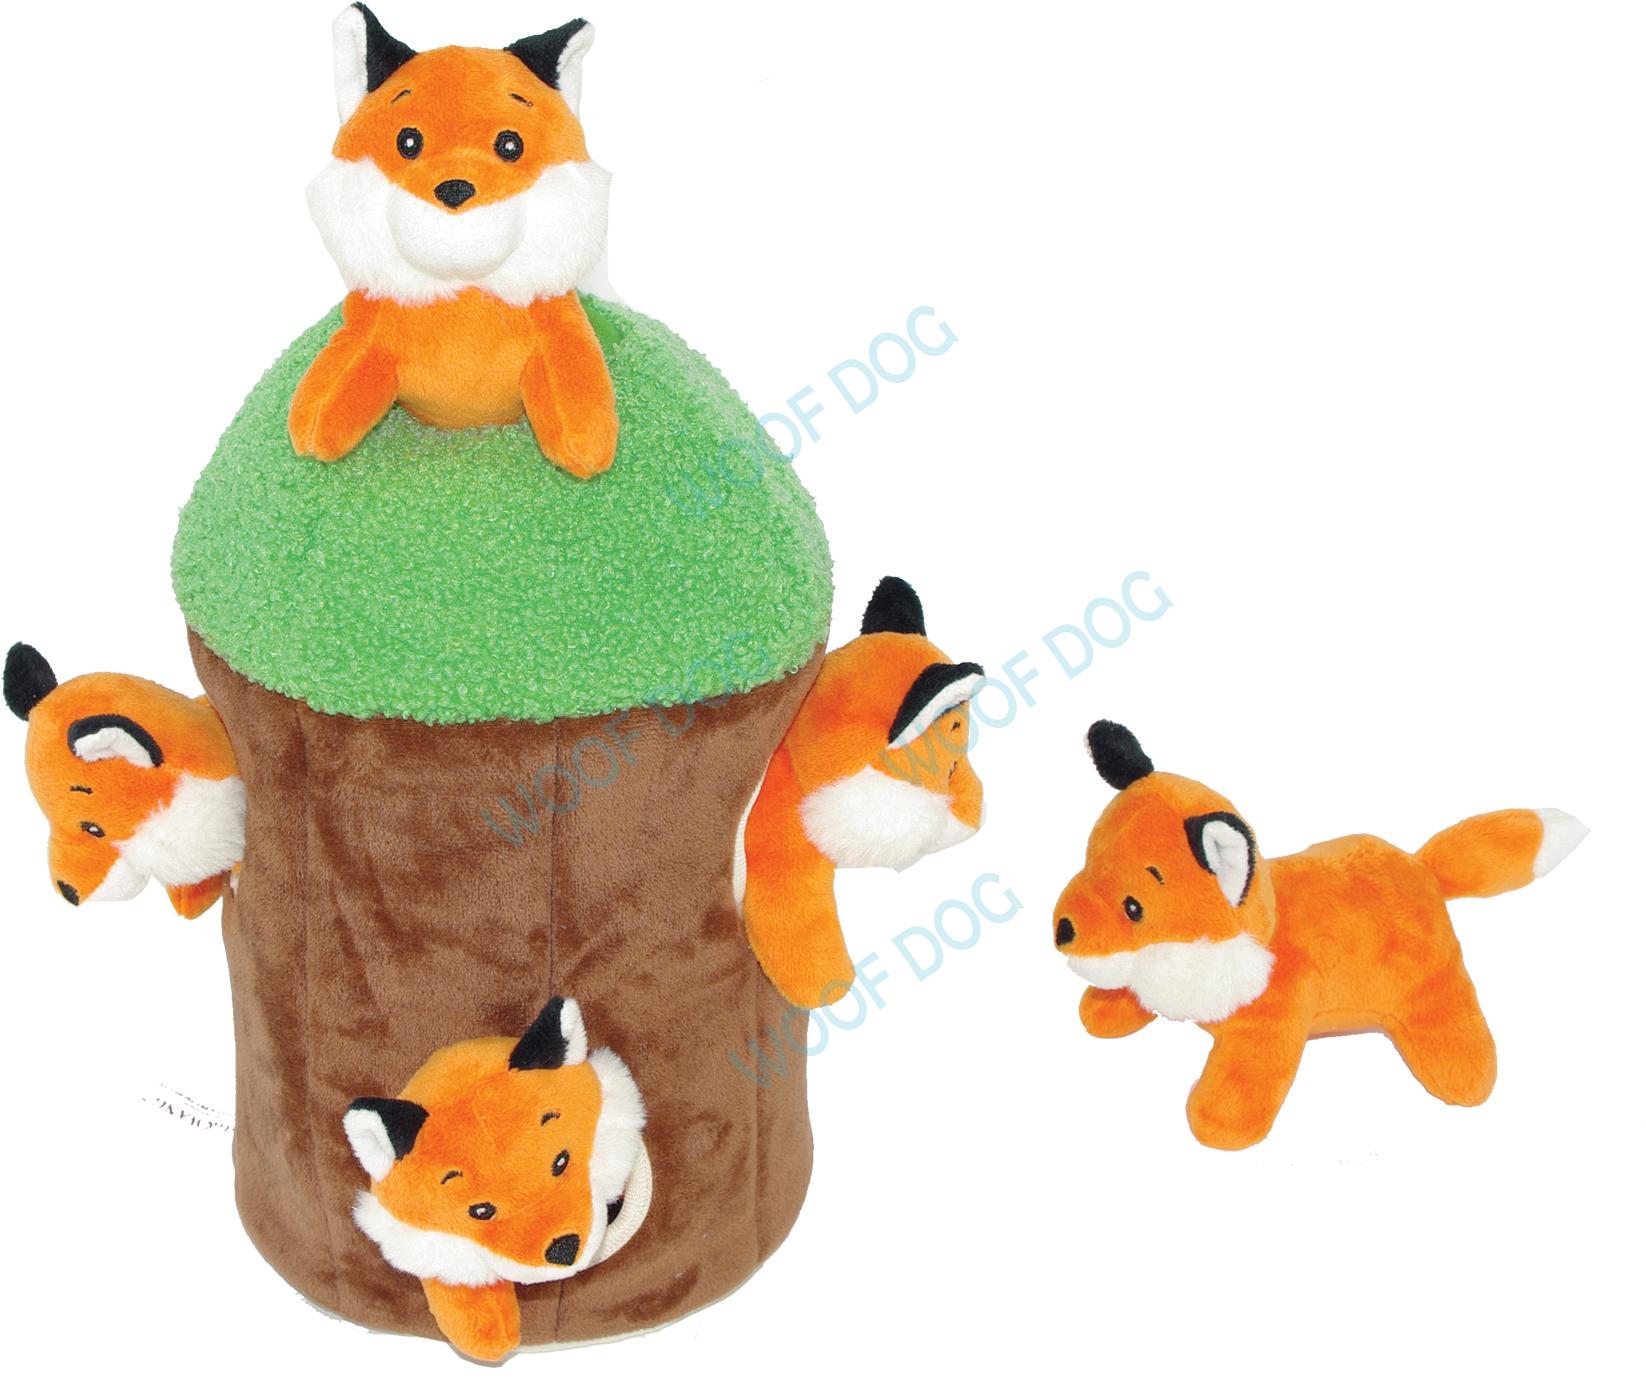 W5430 Hide and seek pet toy set Fox, Raccoon,squirrel